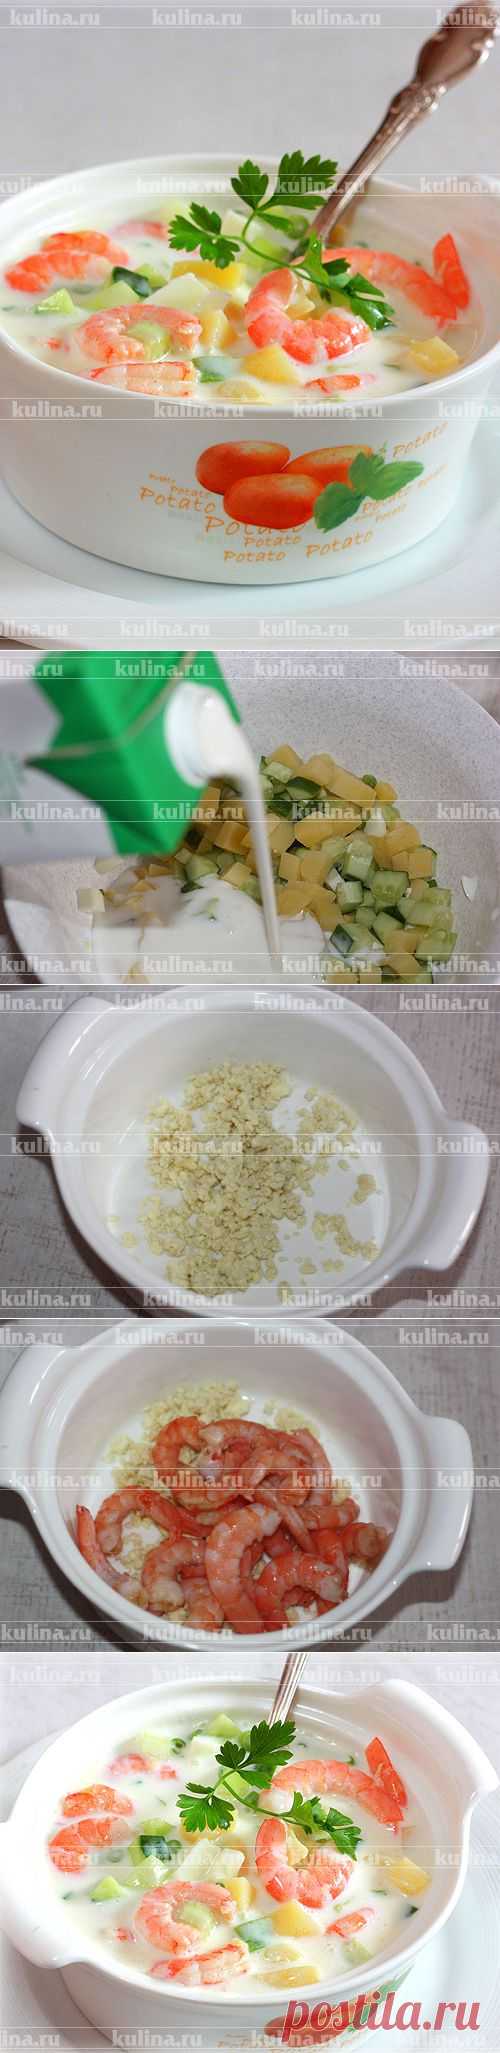 Окрошка с креветками – рецепт приготовления с фото от Kulina.Ru